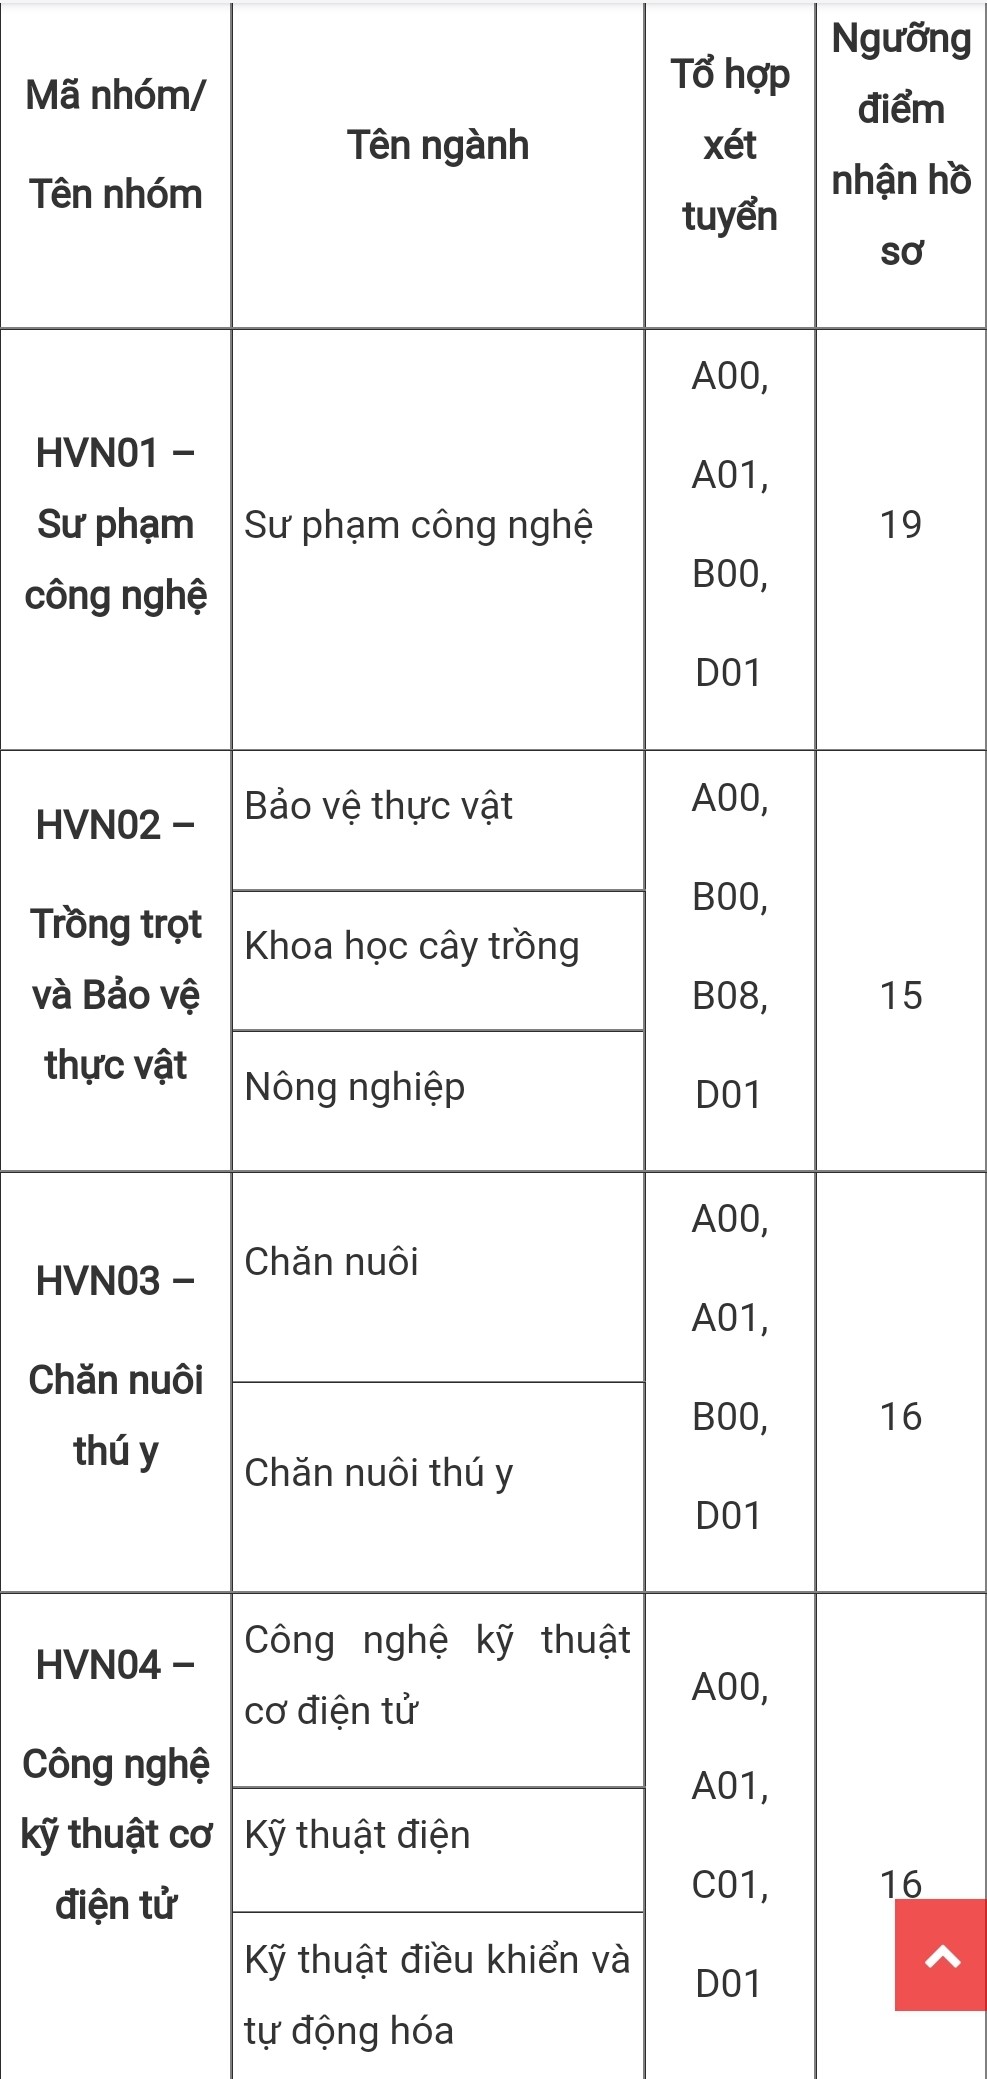 Điểm sàn xét tuyển của Học viện Nông nghiệp Việt Nam cao nhất là 22